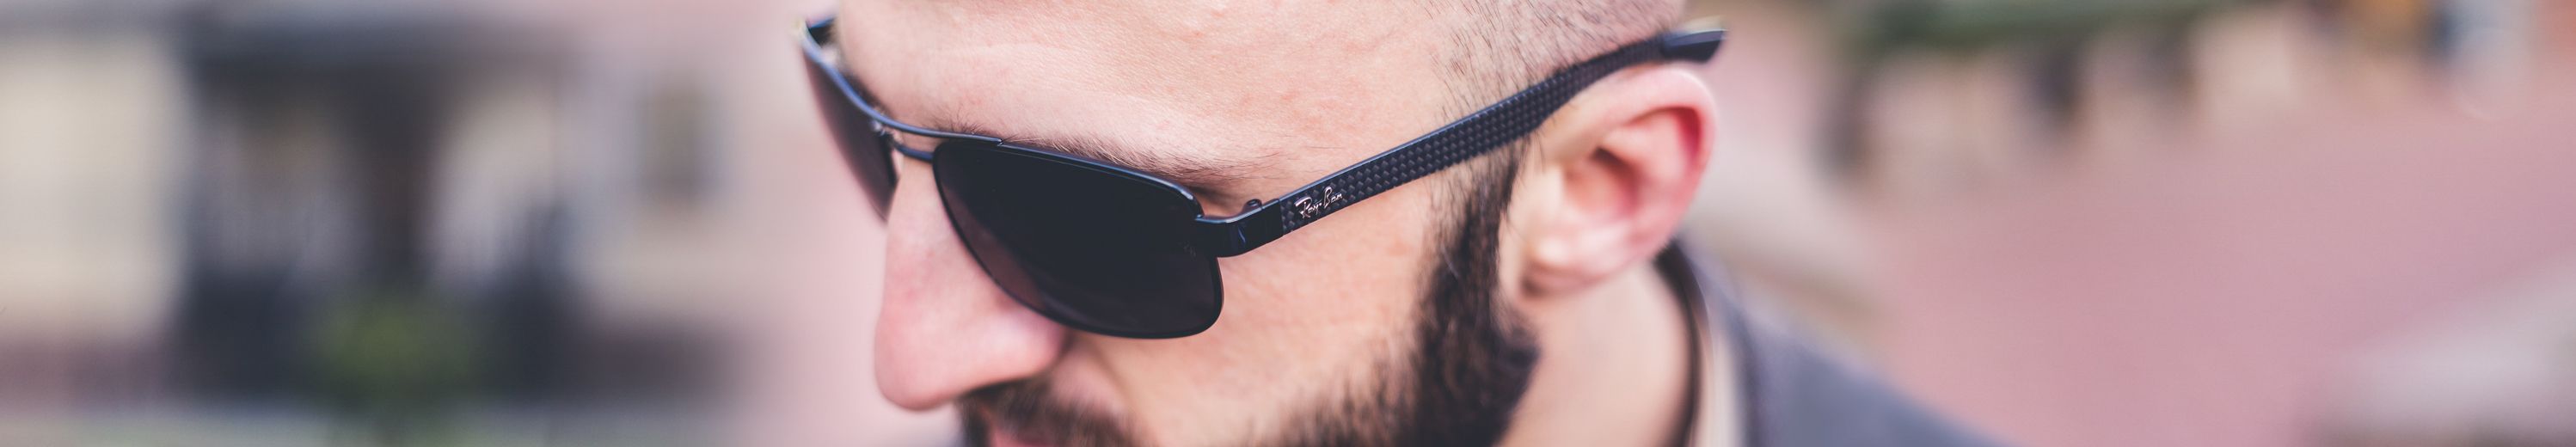 Carbon Fiber Sunglasses Frame for Men & Women